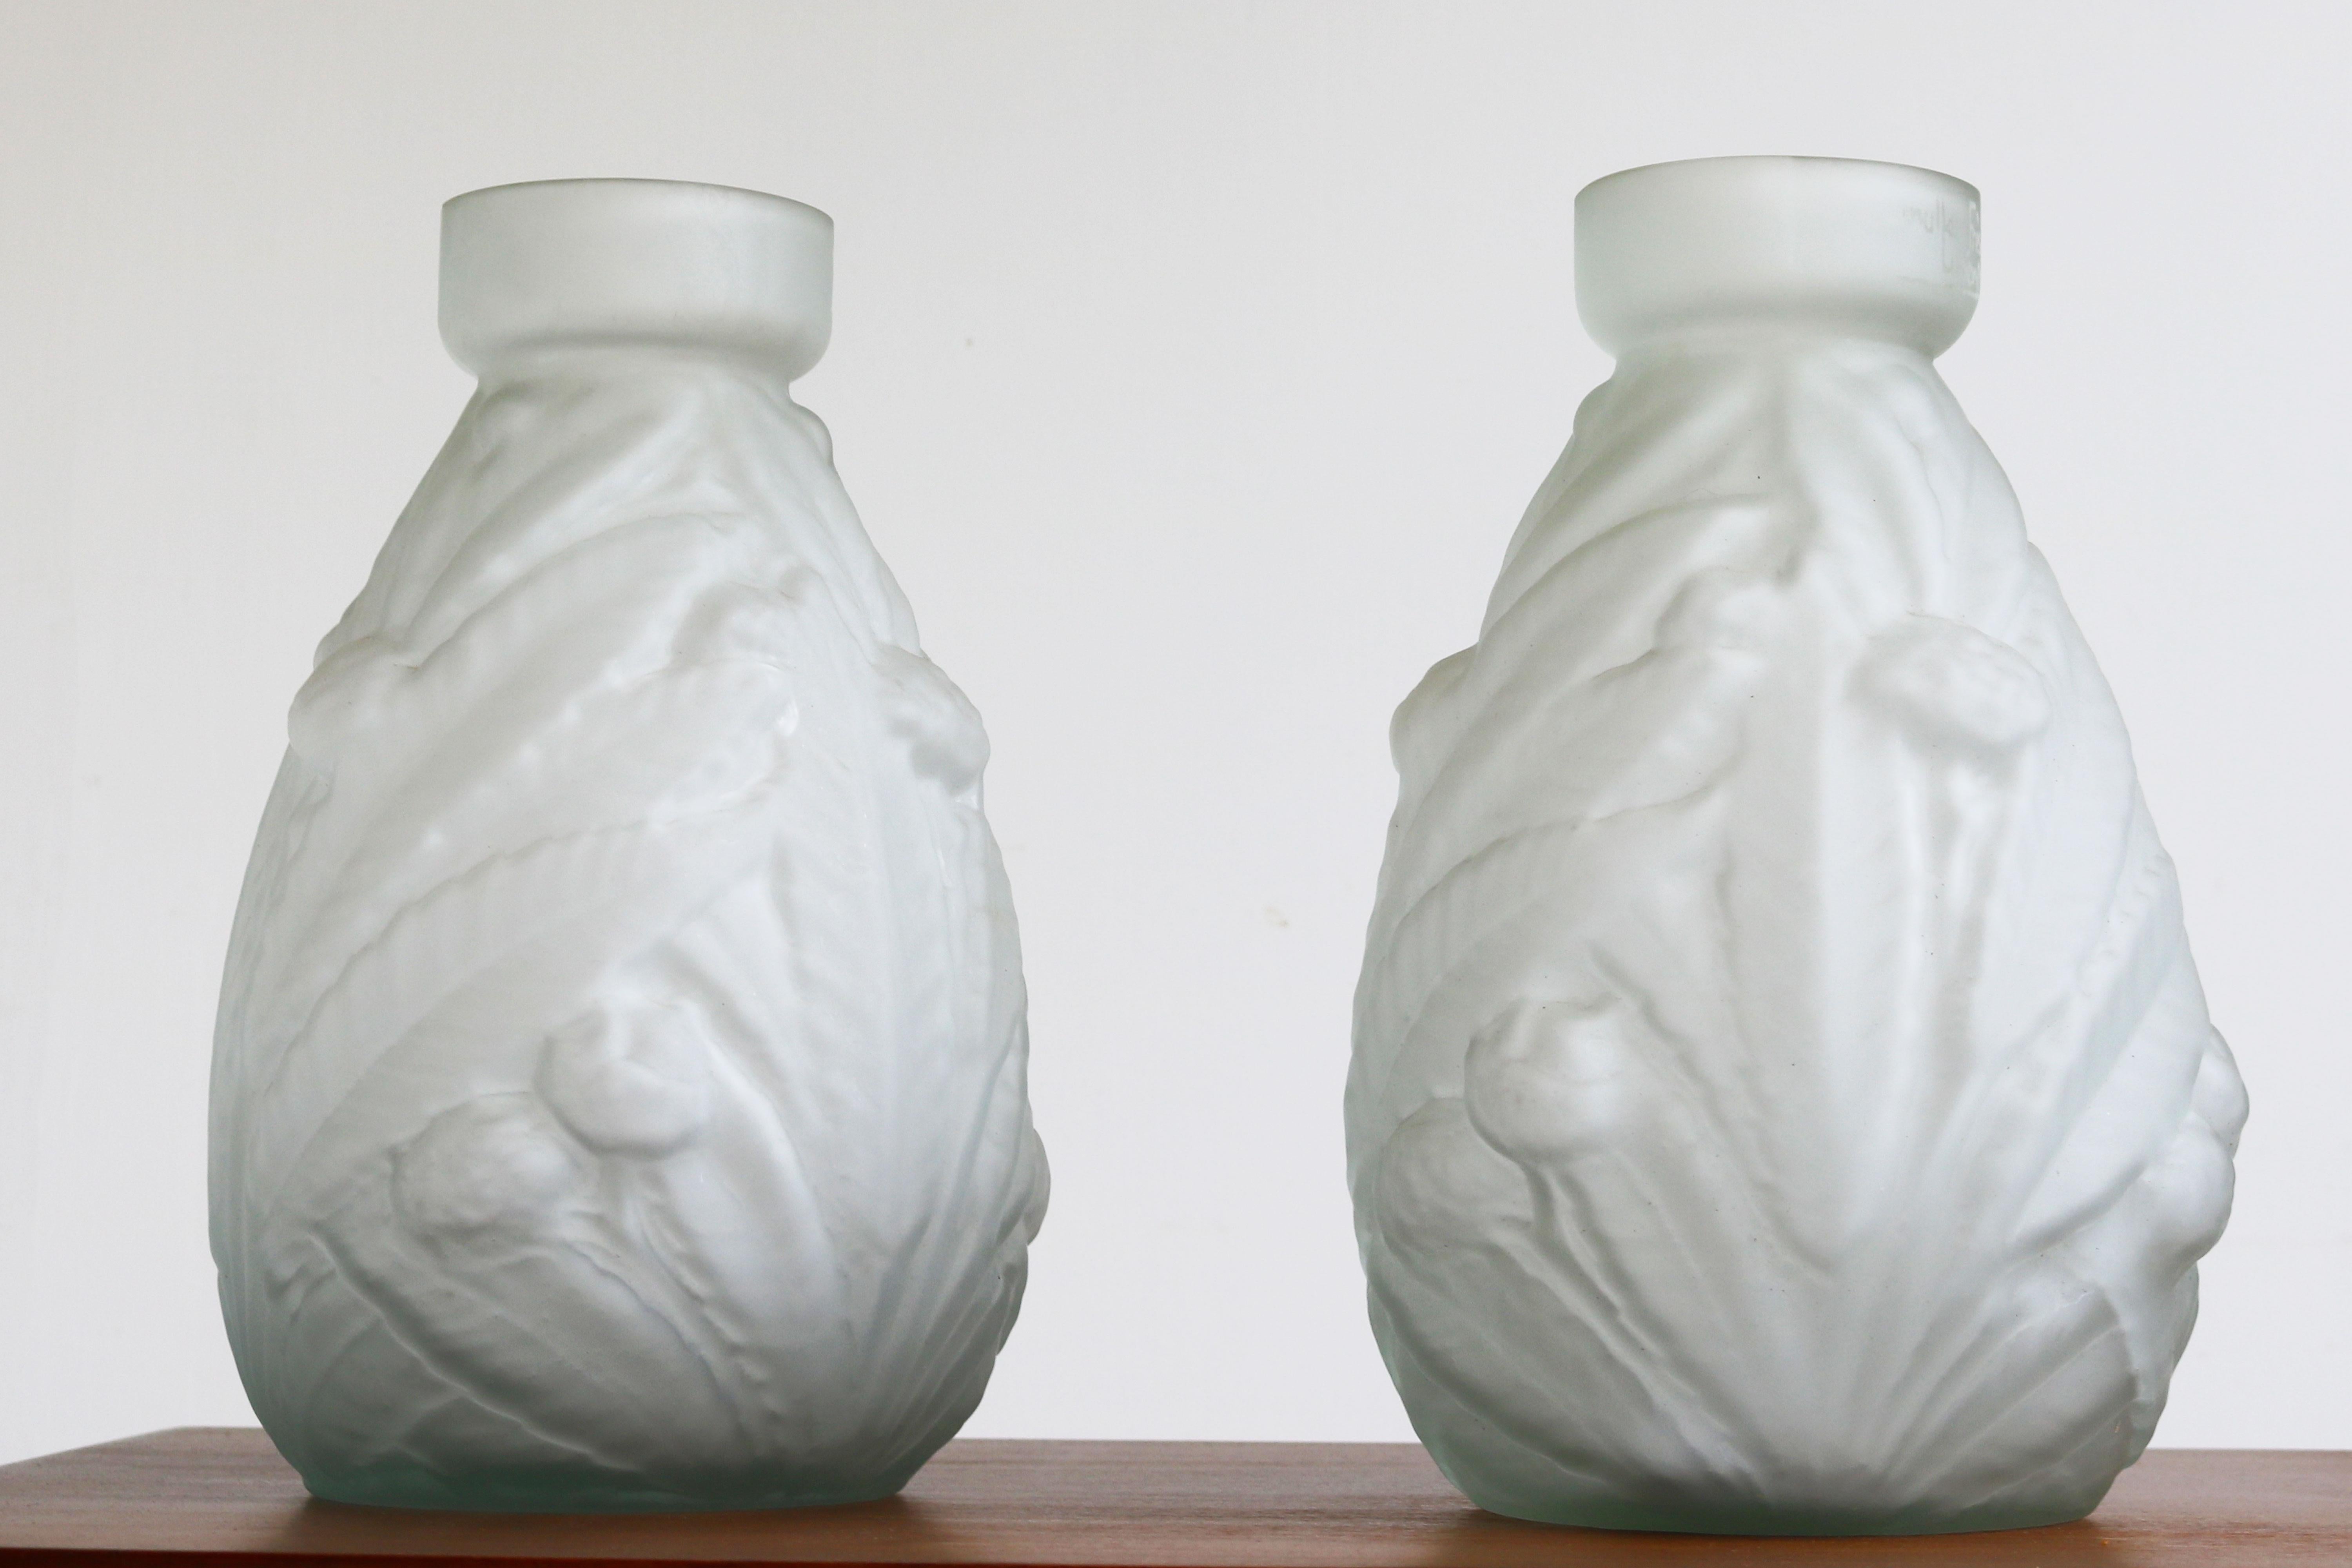 Wunderschönes Paar Jugendstilvasen von Muller Freres Luneville aus mattiertem Glas, 1900 Frankreich. 
Die Vasen sind aus satiniertem (mattiertem) Glas mit erstaunlichen floralen Formen und Motiven, die für die Jugendstilperiode charakteristisch